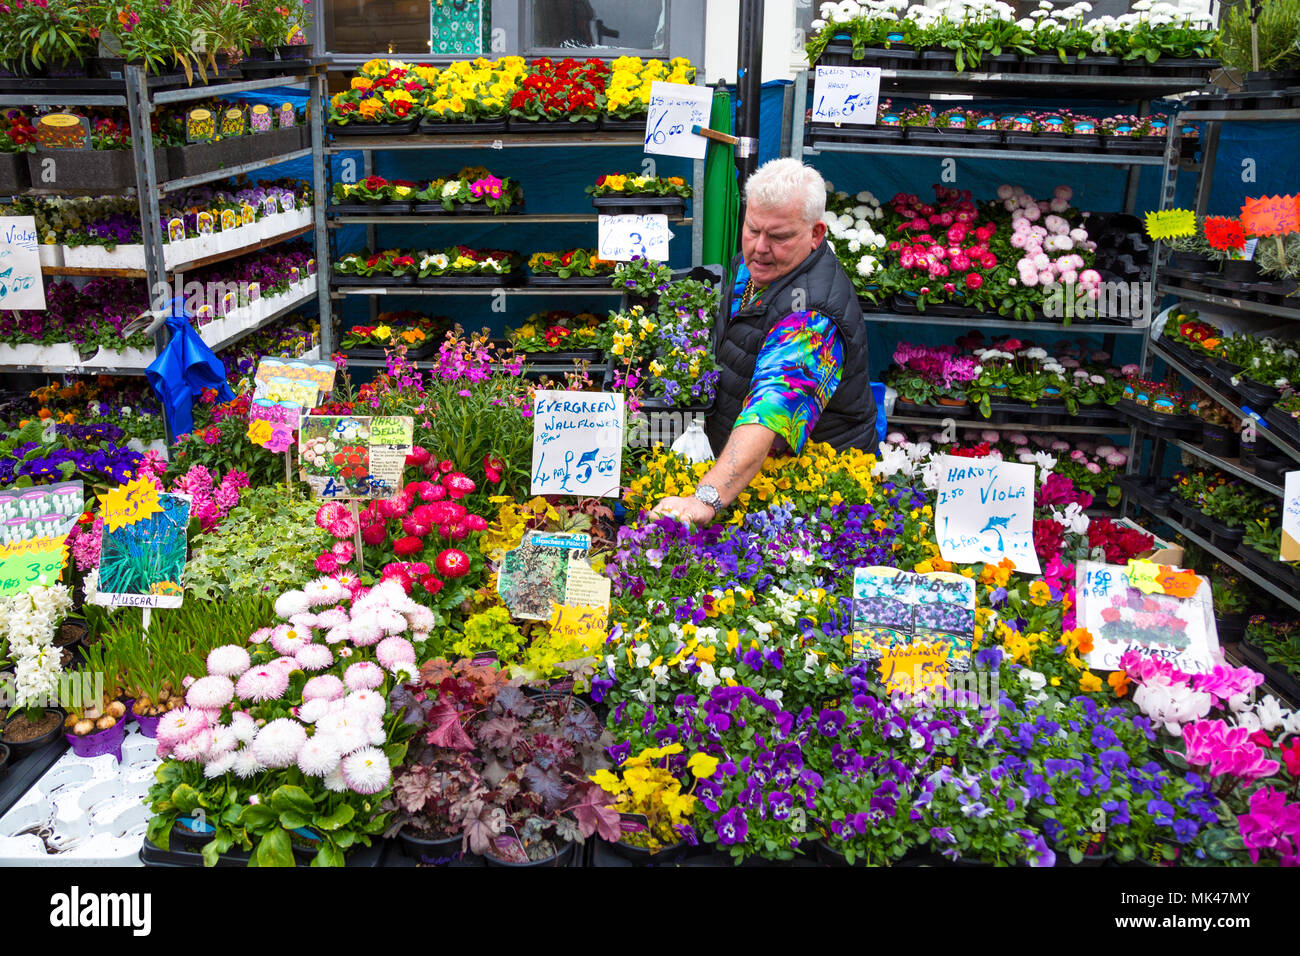 Blume Verkäufer in seinem Stall in der Columbia Road Blumenmarkt, London, UK Stockfoto